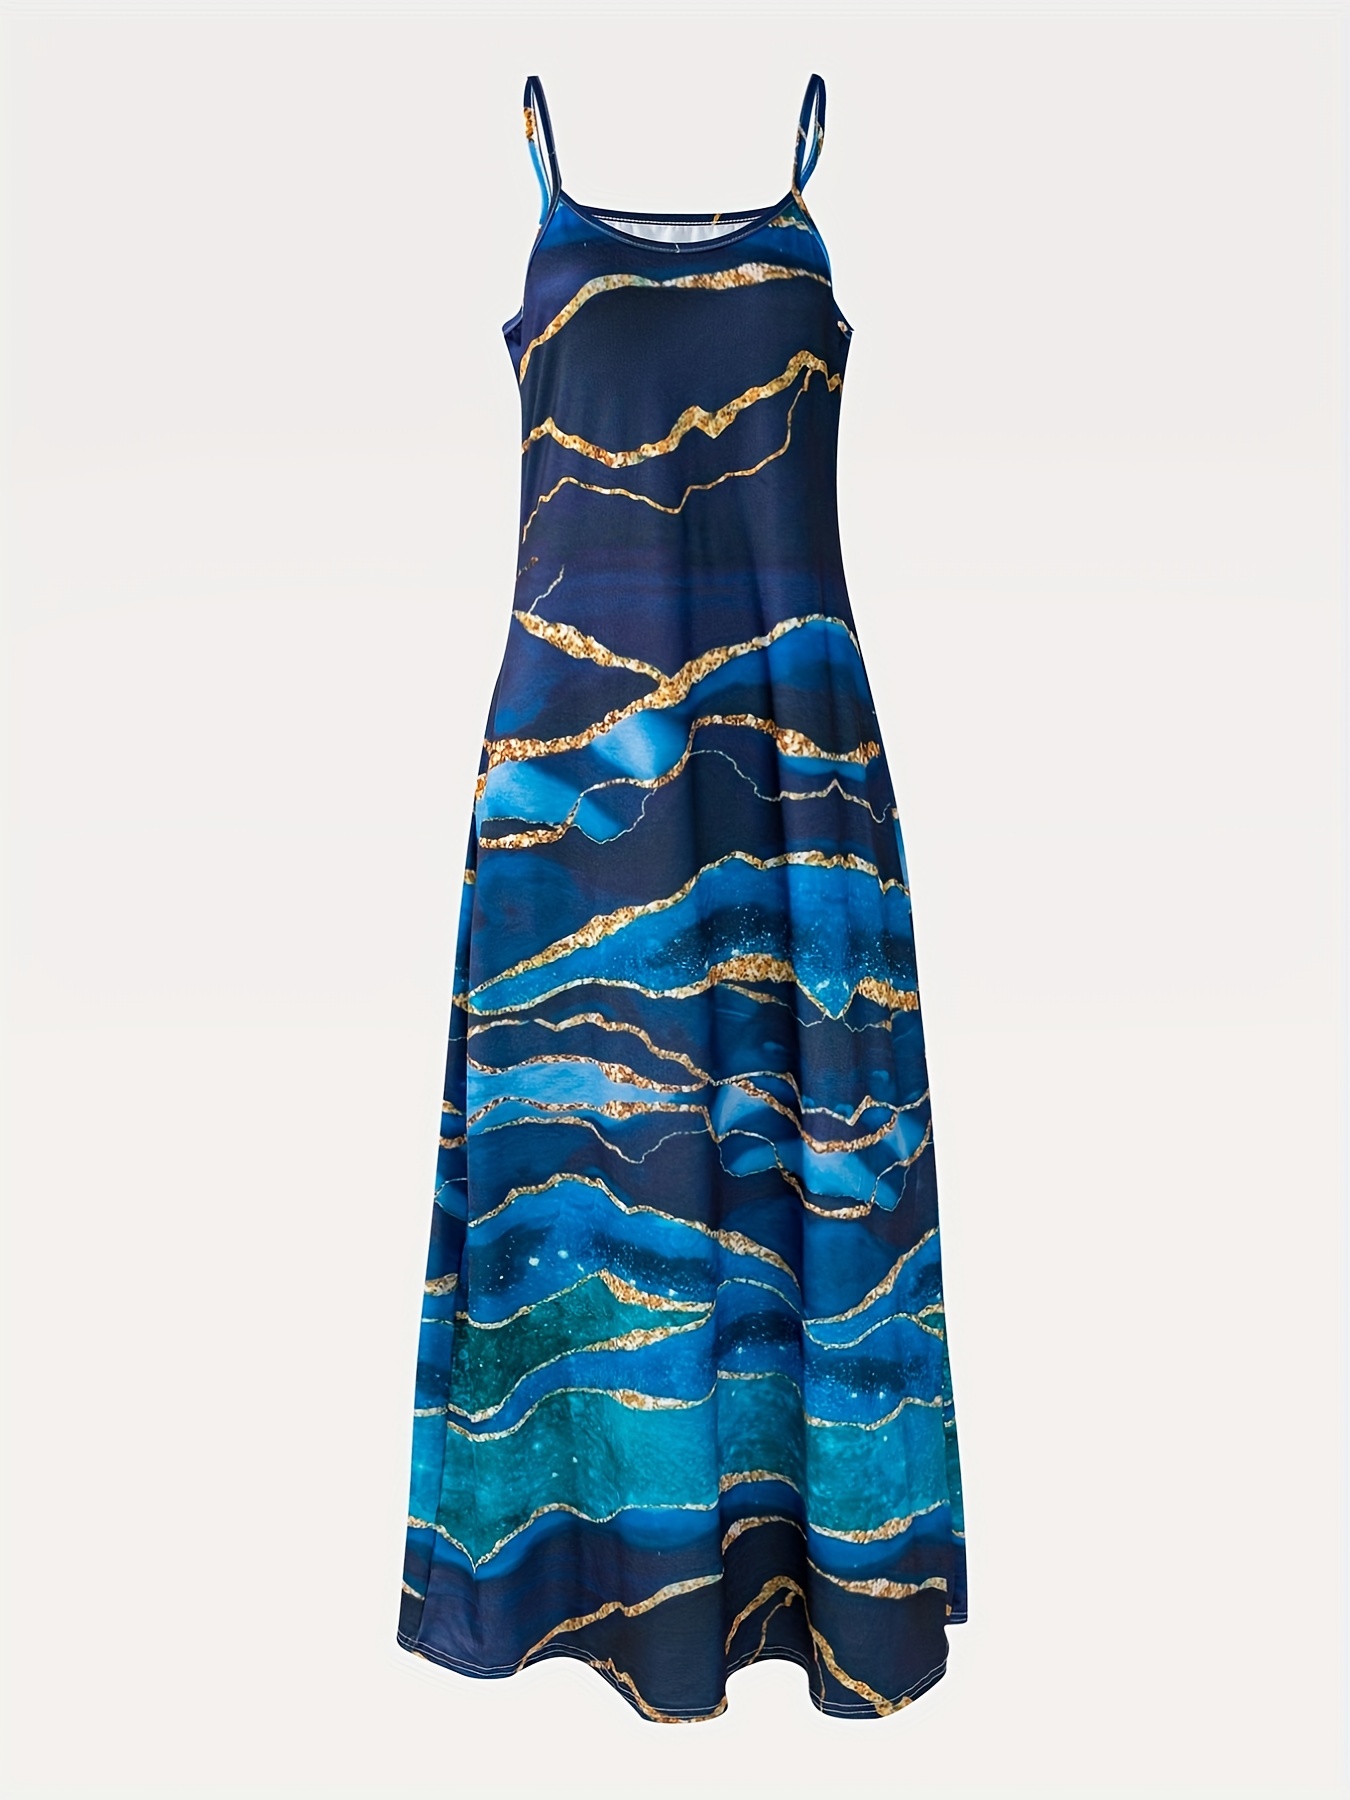 abstract print cami dress boho spaghetti strap sleeveless maxi dress womens clothing